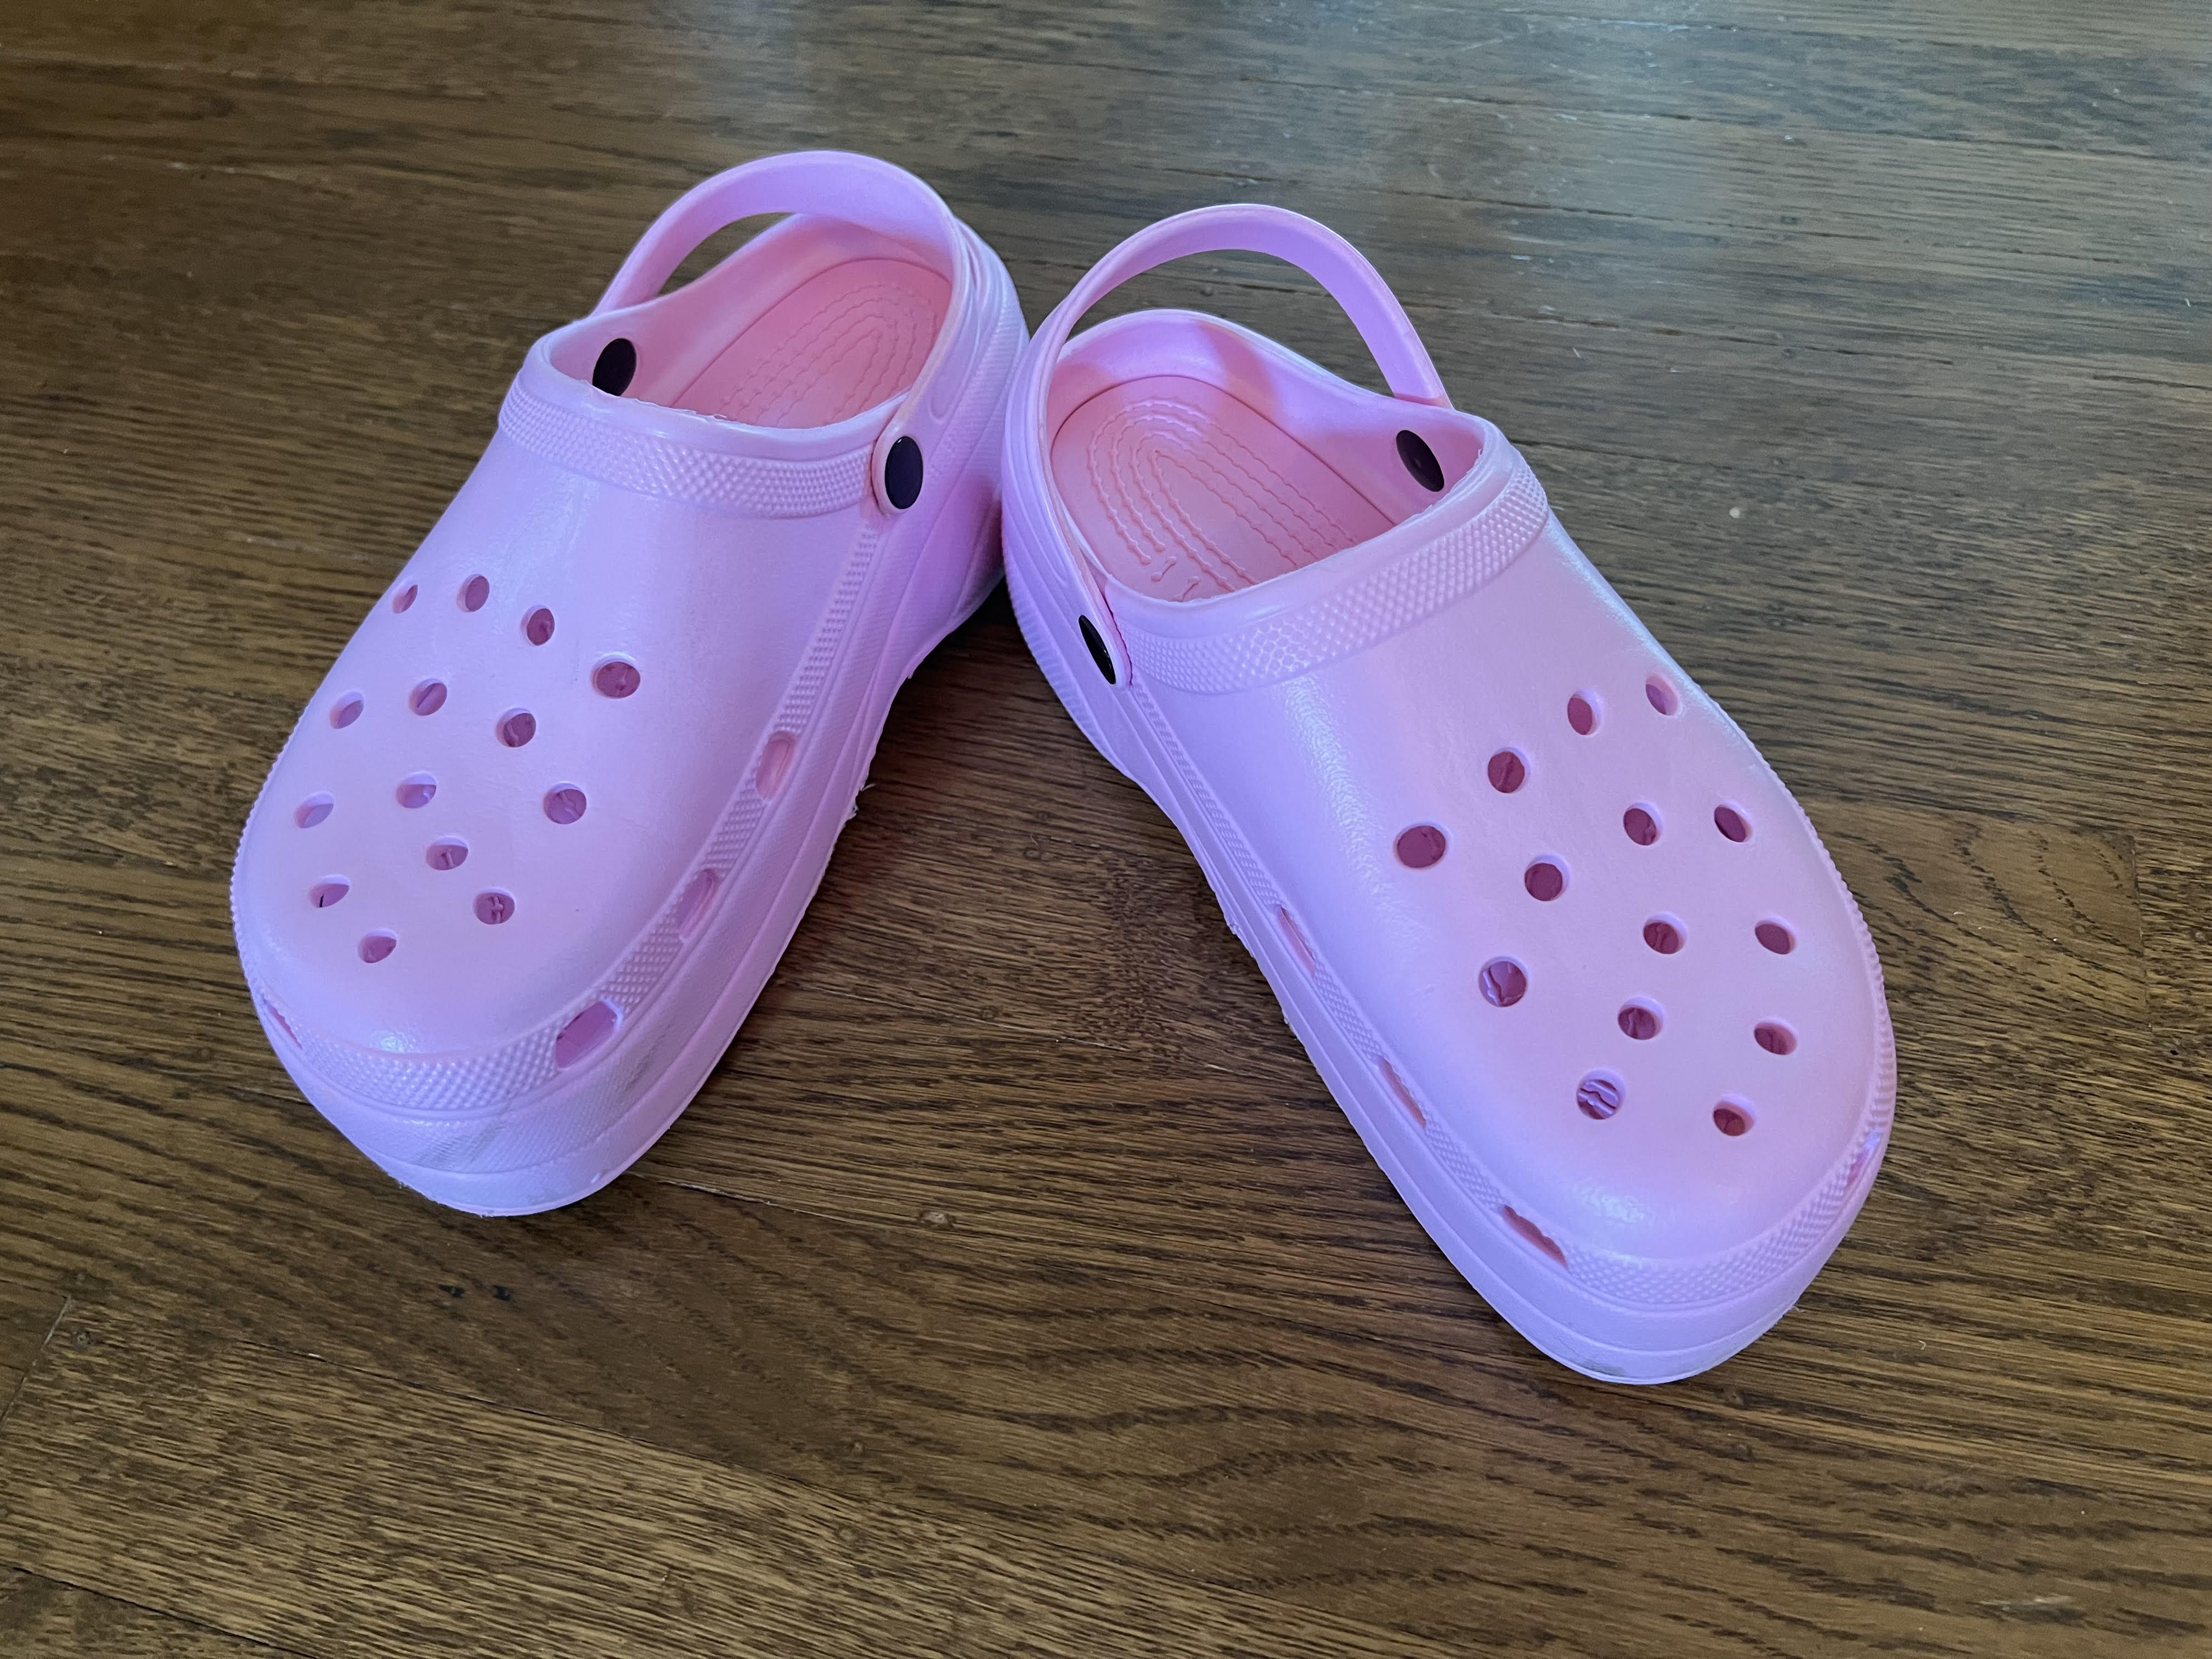 A pair of pink Crocs clogs.